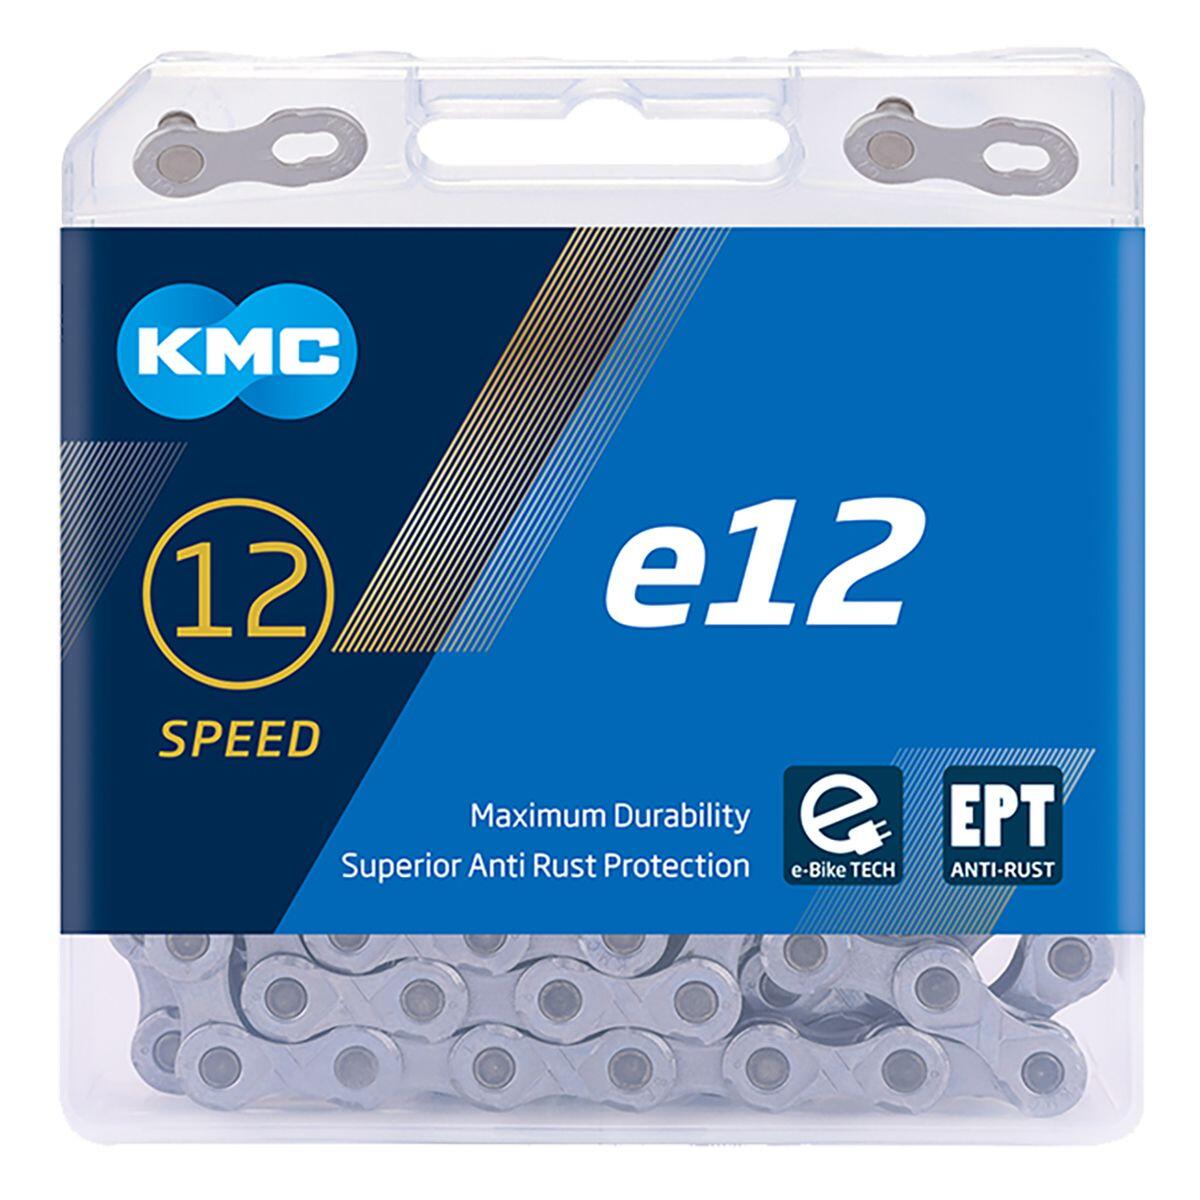 KMC KMC E12 EPT E-Bike Chain